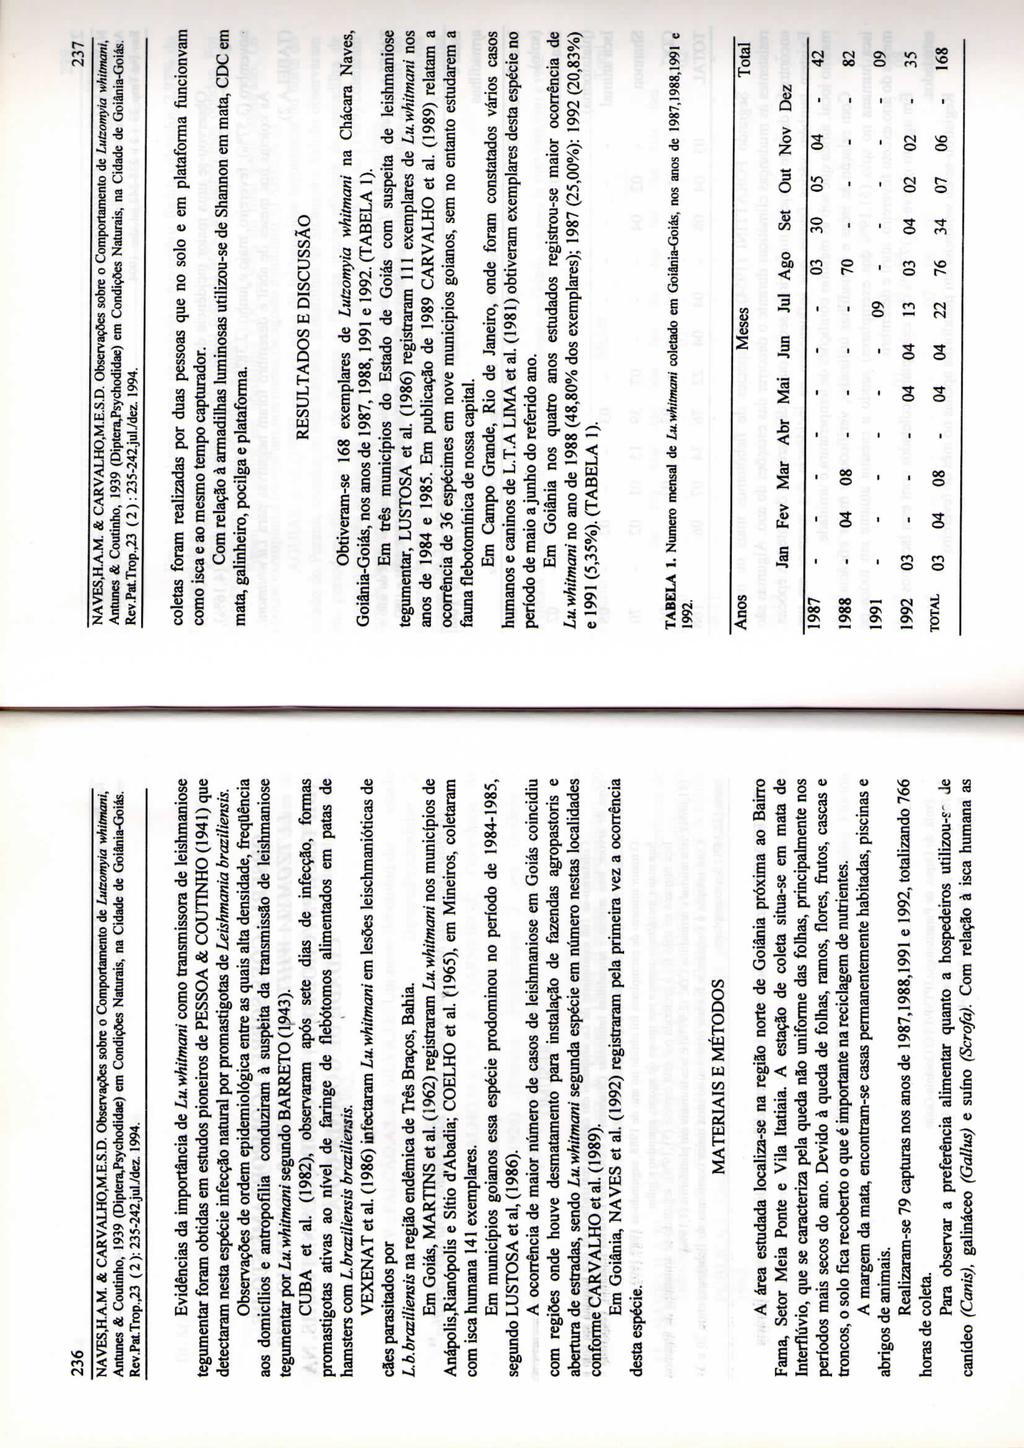 236 NAVES.H.A.M. & CARVALHO,M.E.S.D. Observações sobre o Comportamento de Lutzomyia whitmani, Antunes & Coutinho, 1939 (Diptera,Psychodtdae) em Condições Naturais, na Cidade de Goiânia-Goiás. Rev.Pat.